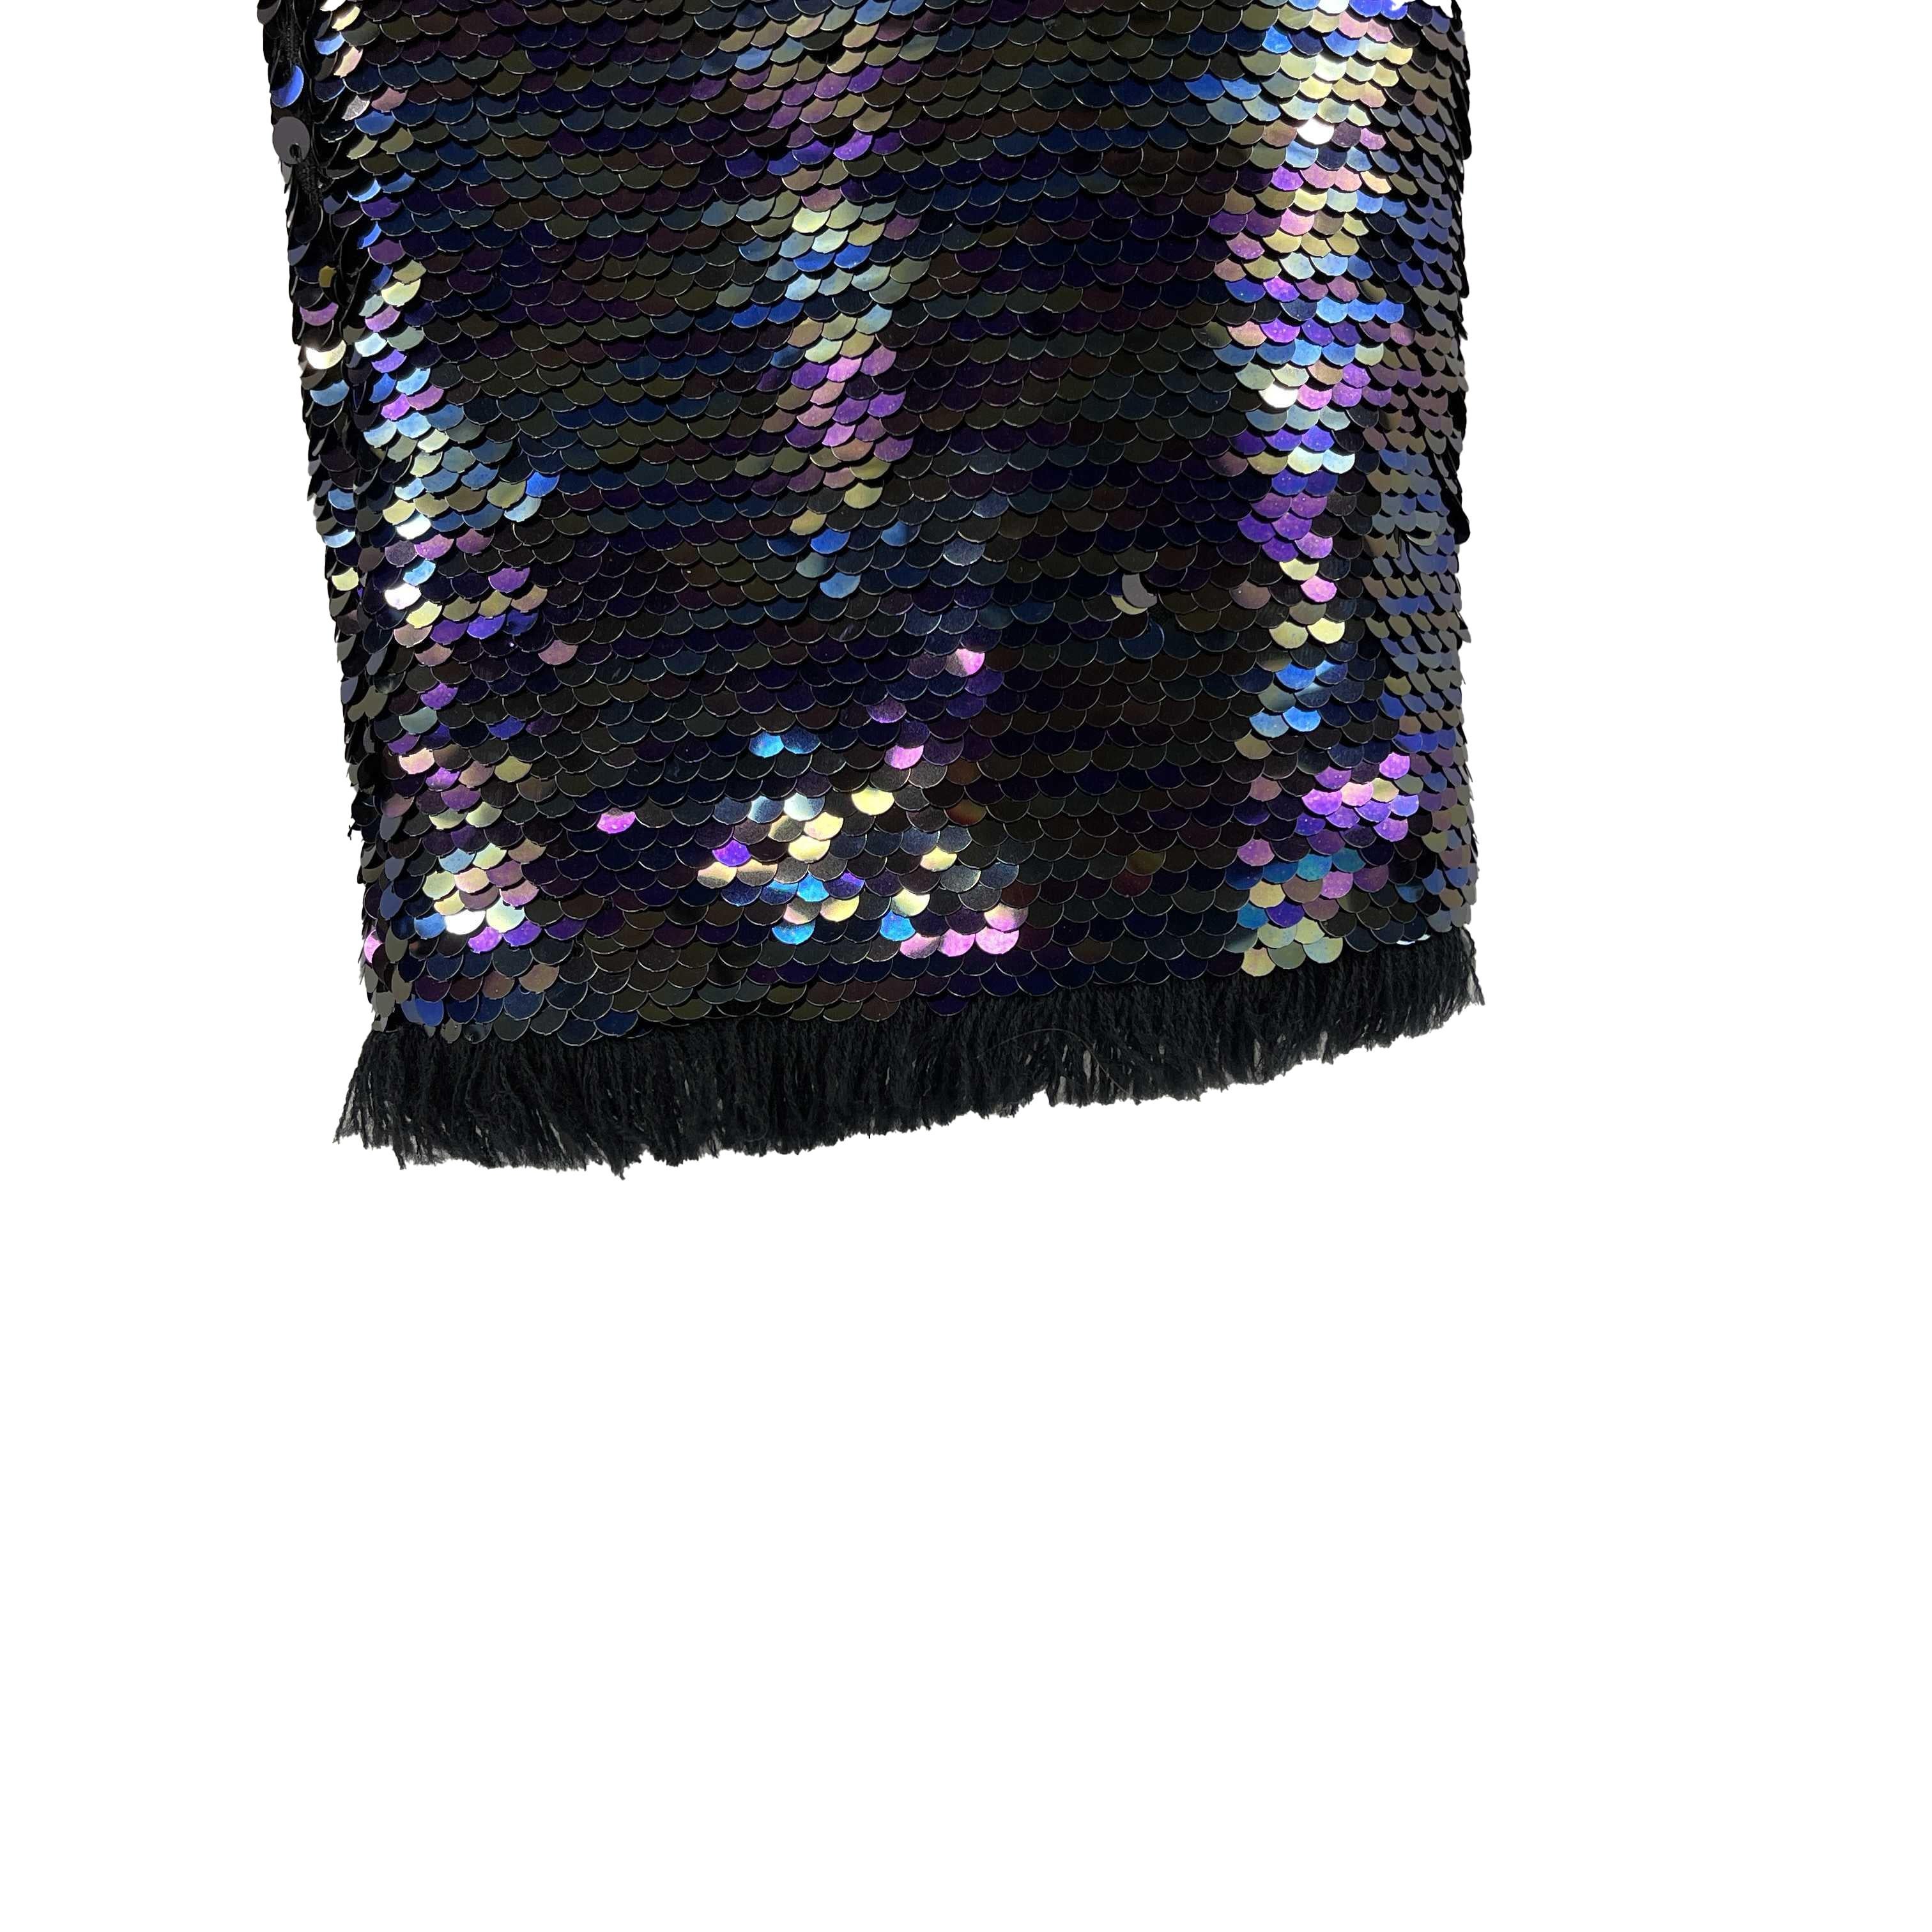 Black Balmain - Sequin Embellished Fringe Trim Purple Pants - 34 US 4 - NEW For Sale